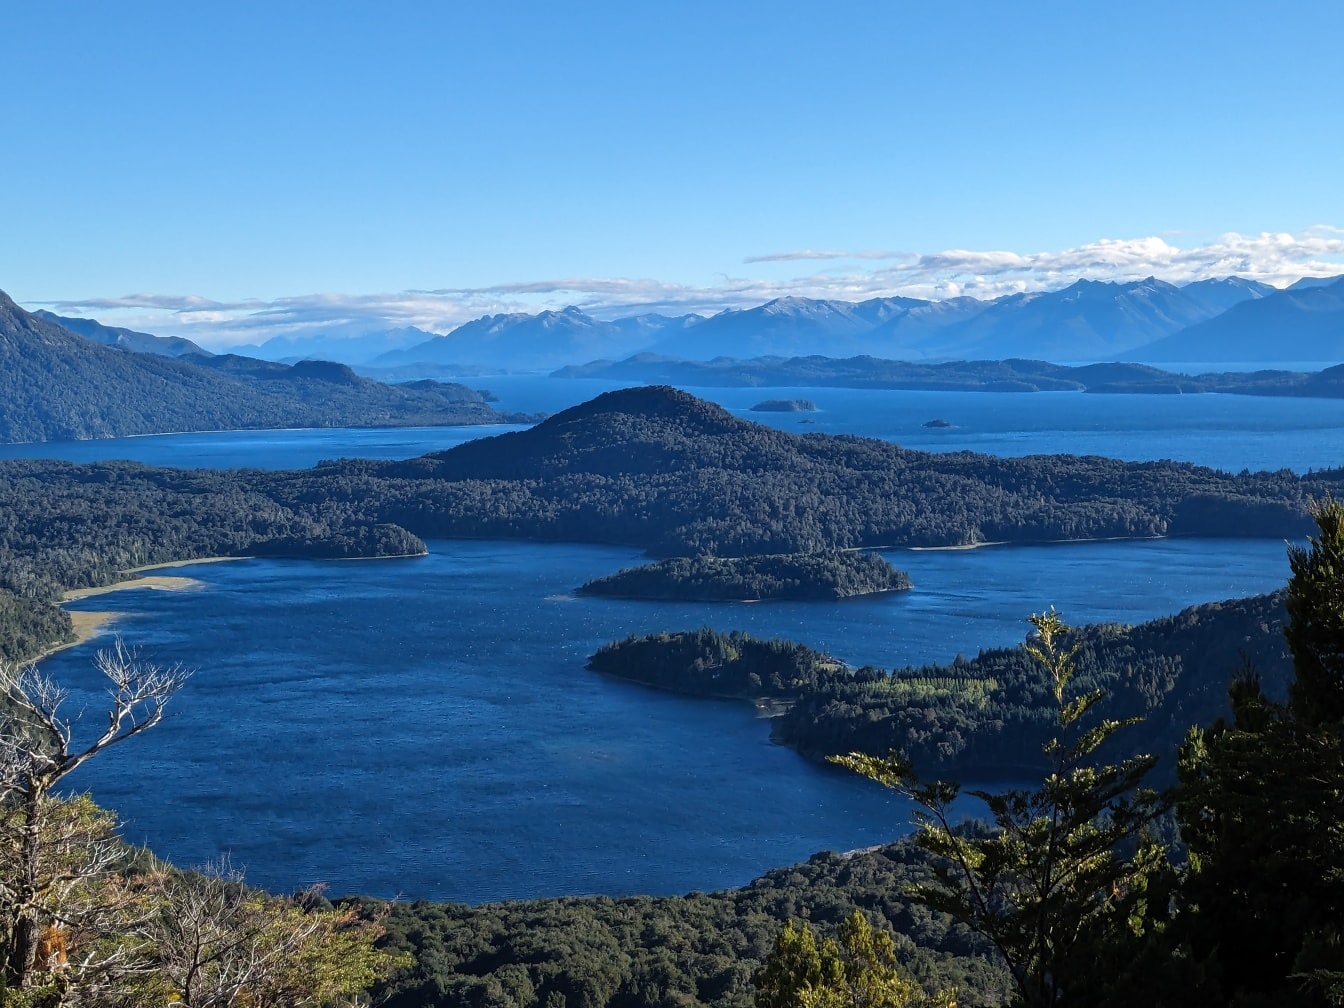 Panorama af Nahuel Huapi sø i naturpark i Patagonien i Sydamerika med øer og bjerge i baggrunden